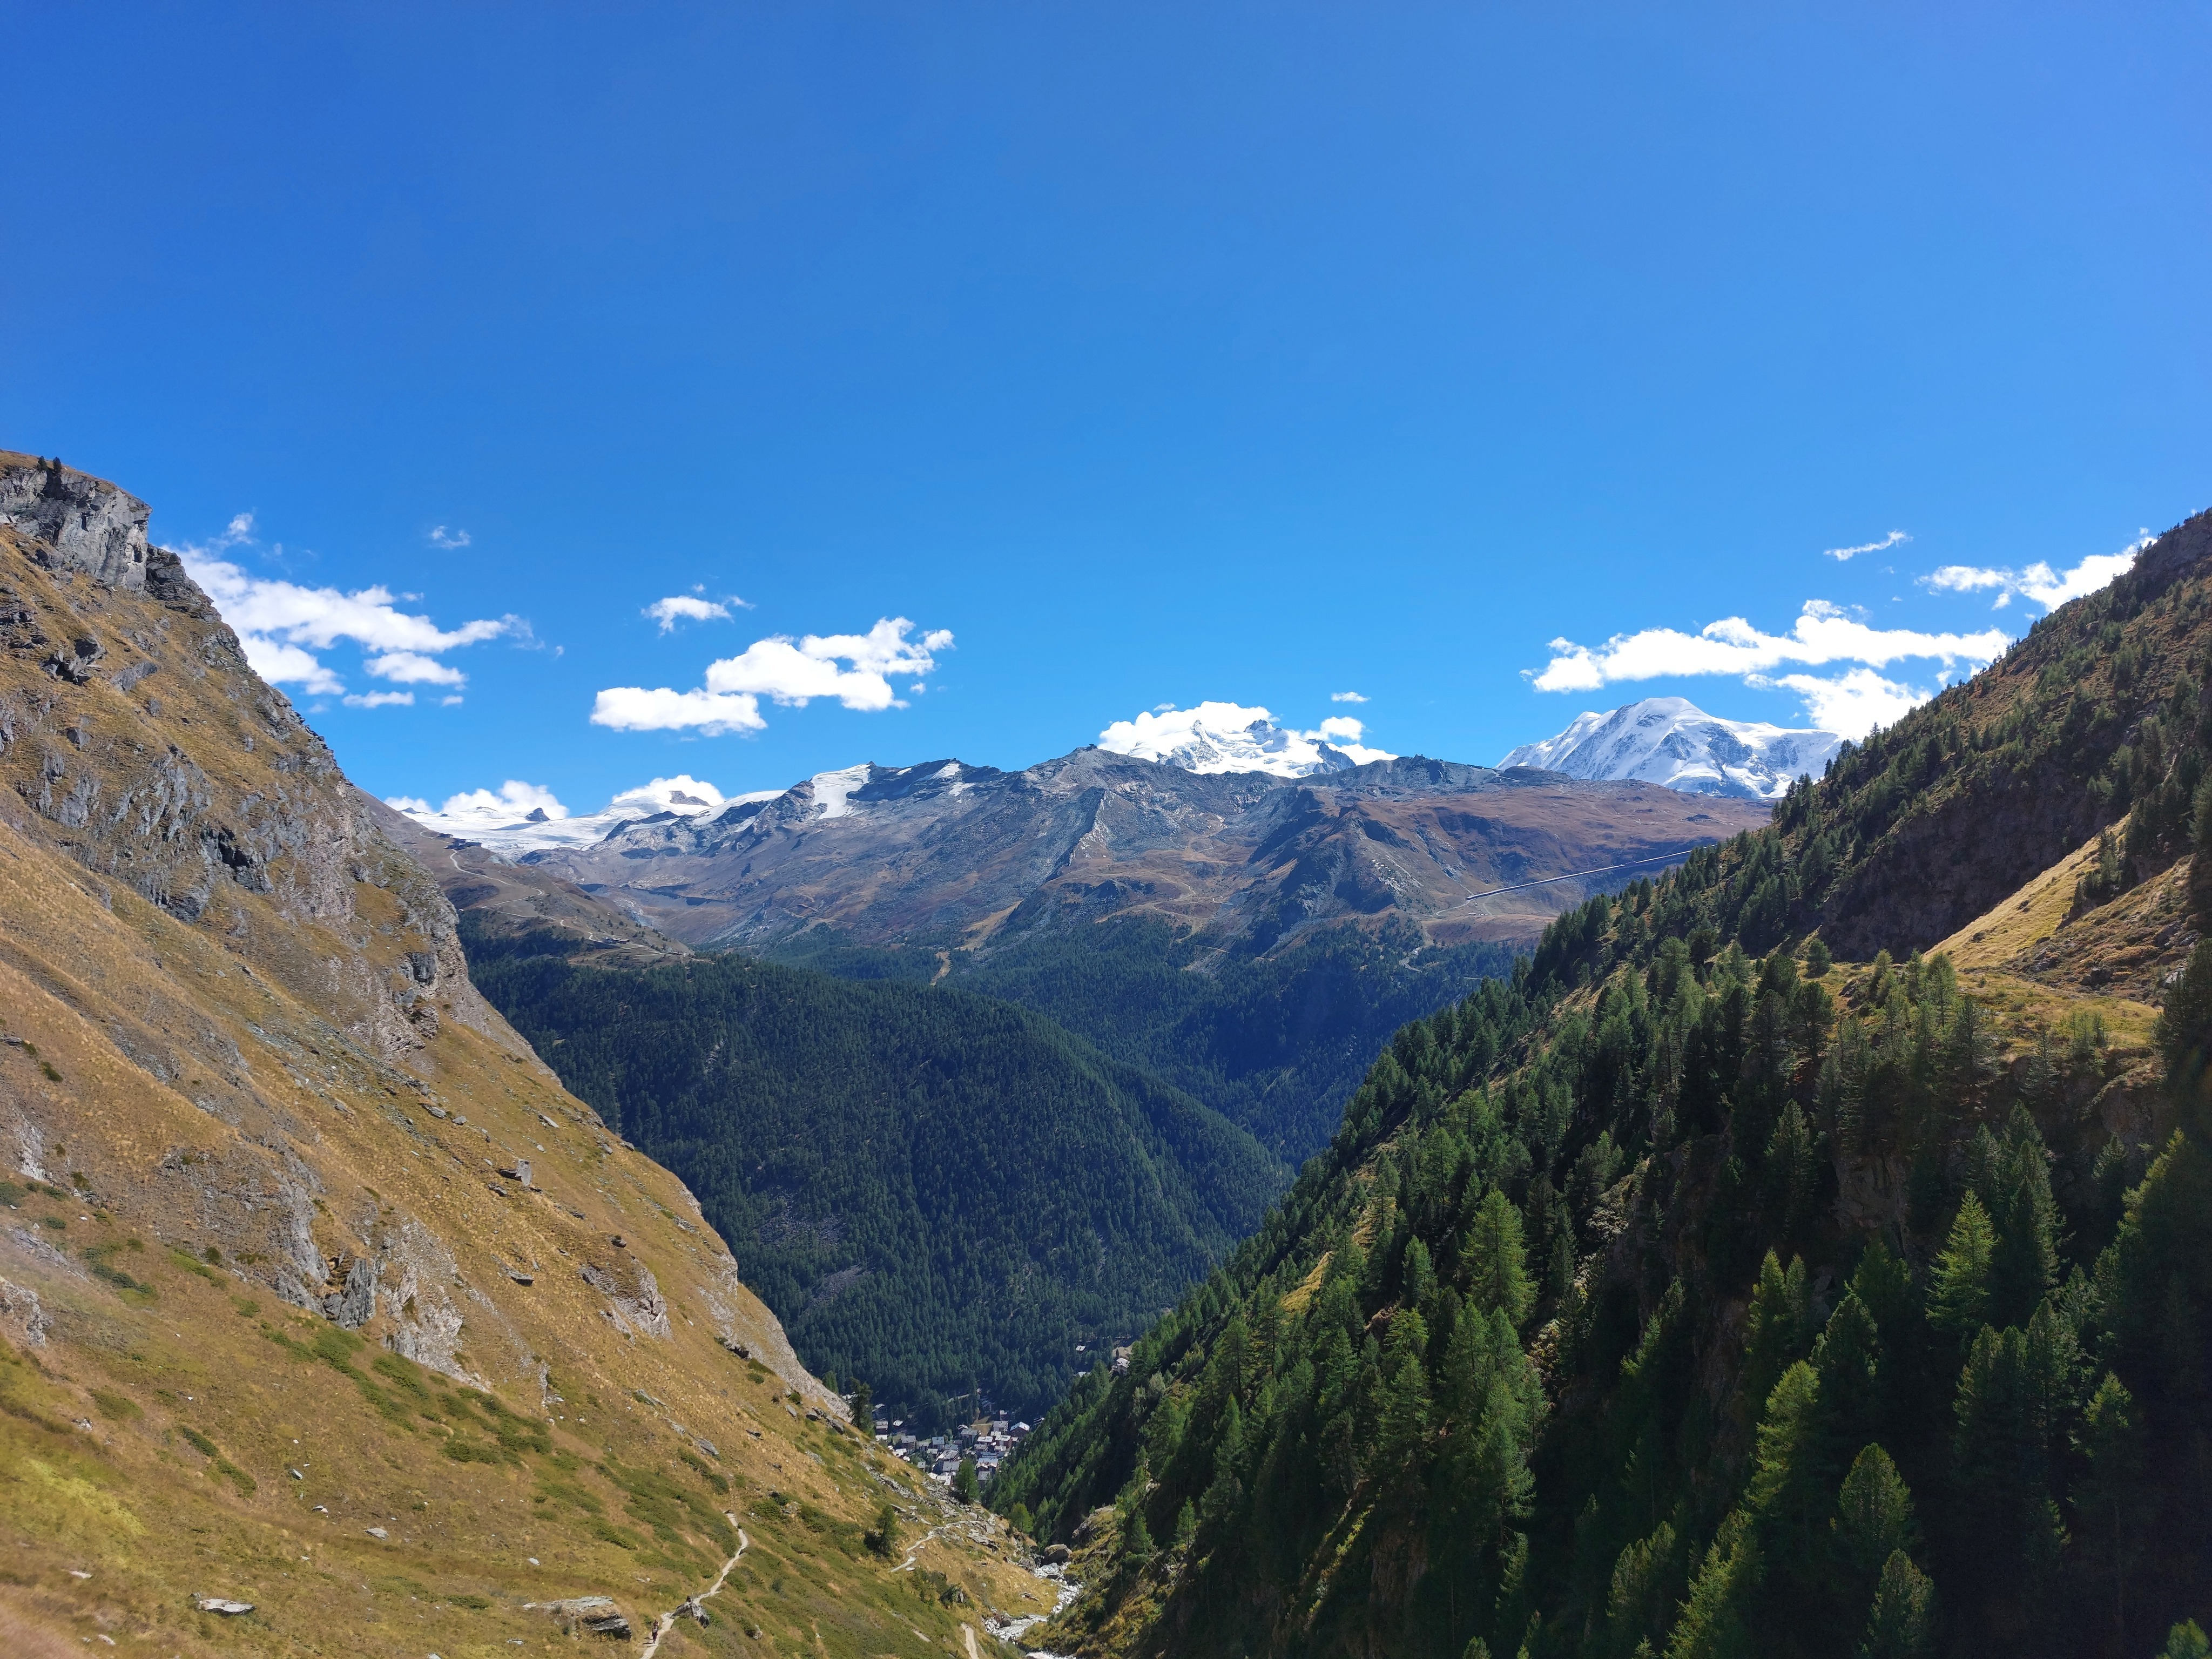 Looking back towards Zermatt